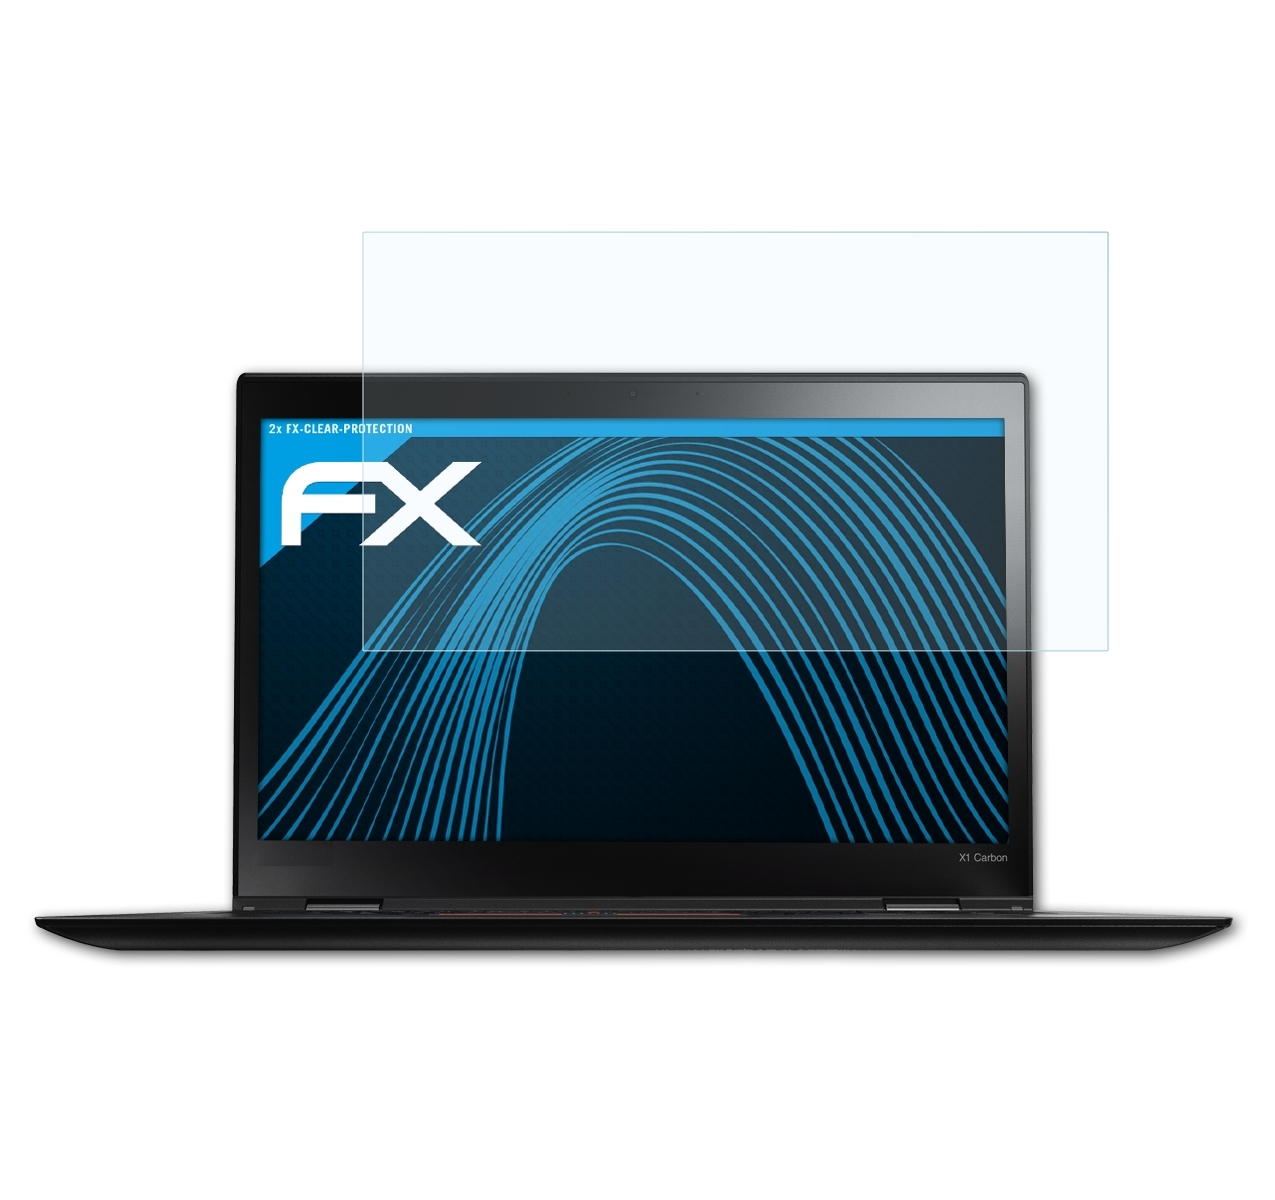 Carbon Lenovo (3rd ThinkPad X1 FX-Clear ATFOLIX Displayschutz(für 2x Gen. 2015))